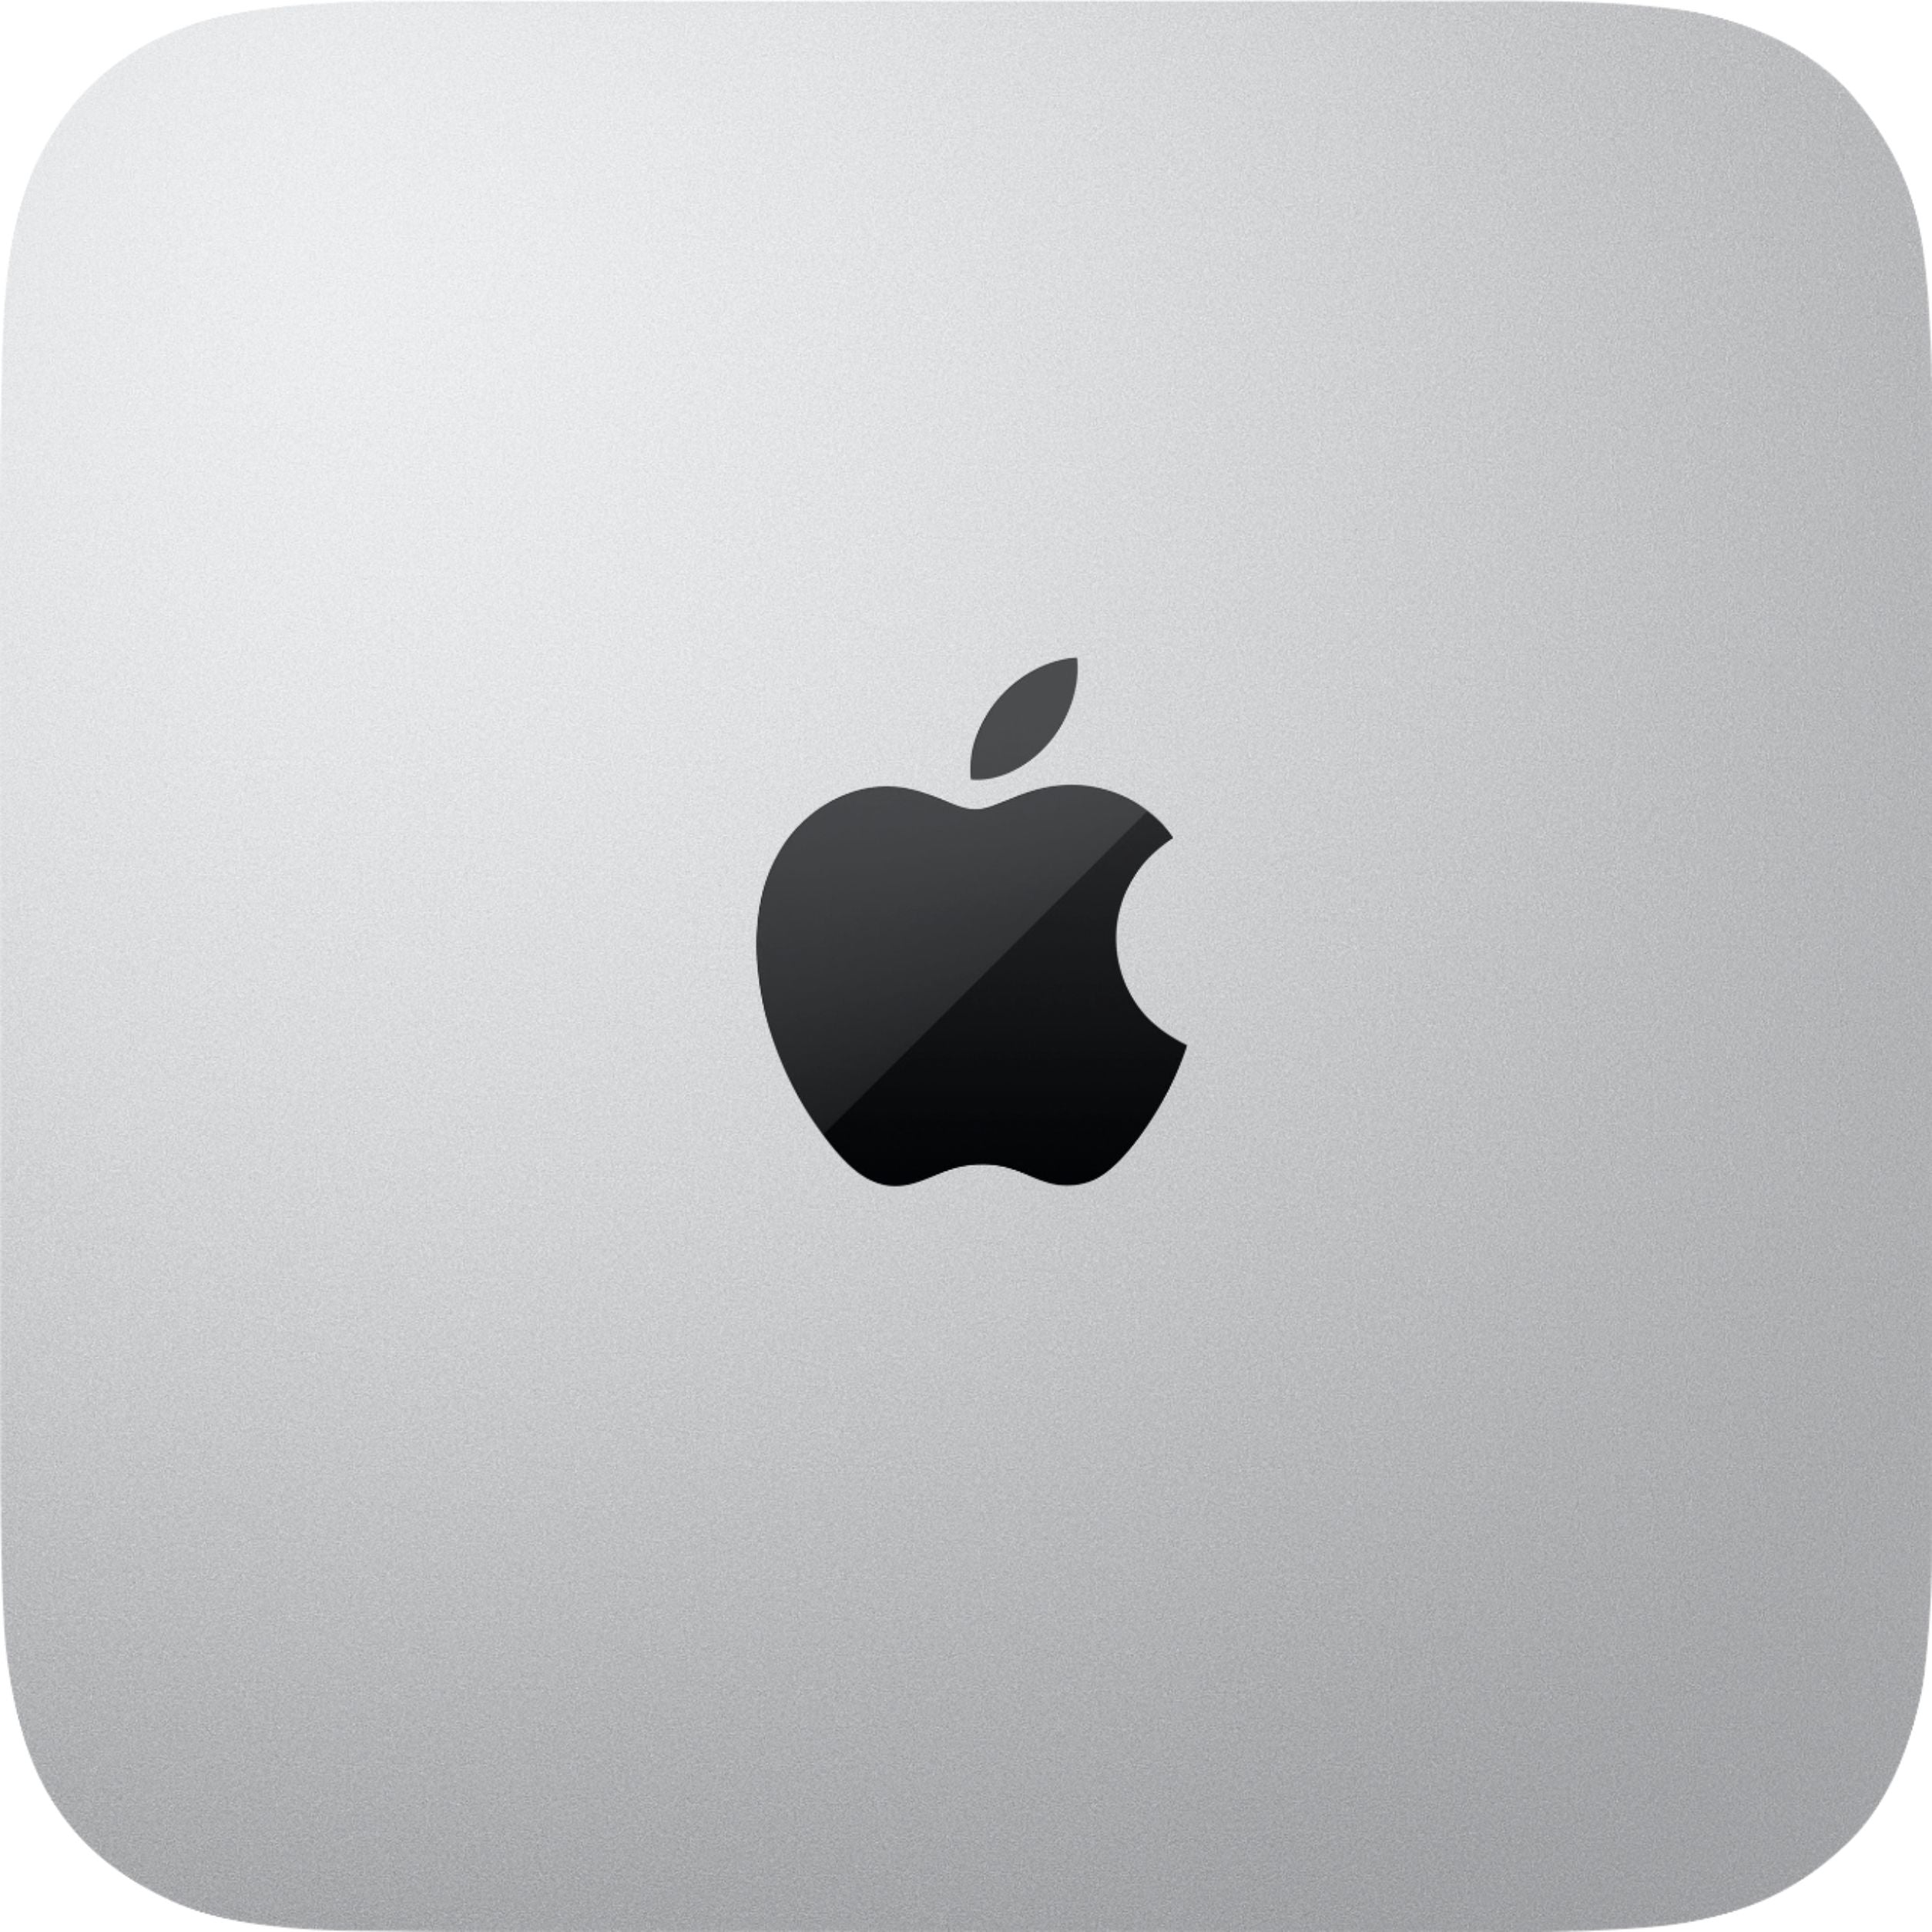 Apple Mac Mini 2020 3.2GHz M1 Chip 8GB RAM 512GB SSD